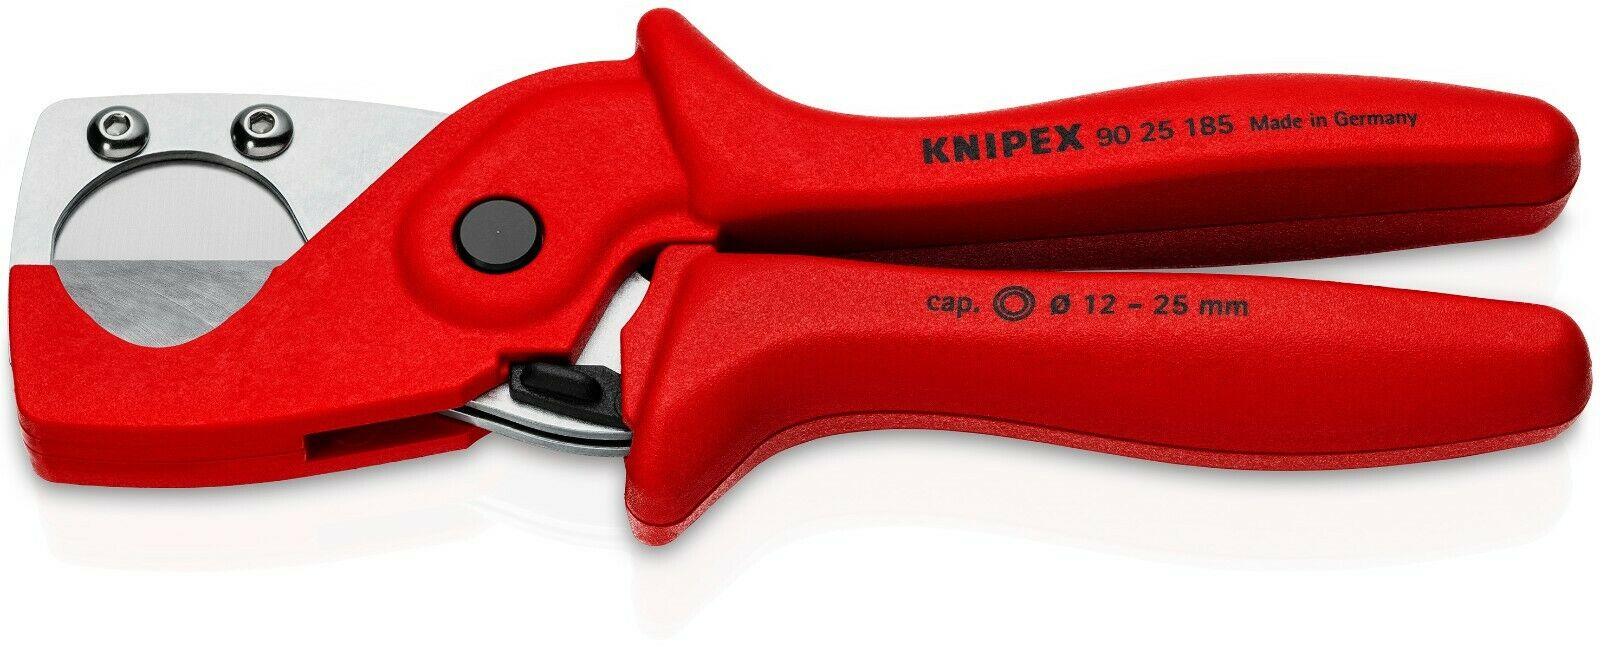 Knipex Pneumatic Hose Cutter